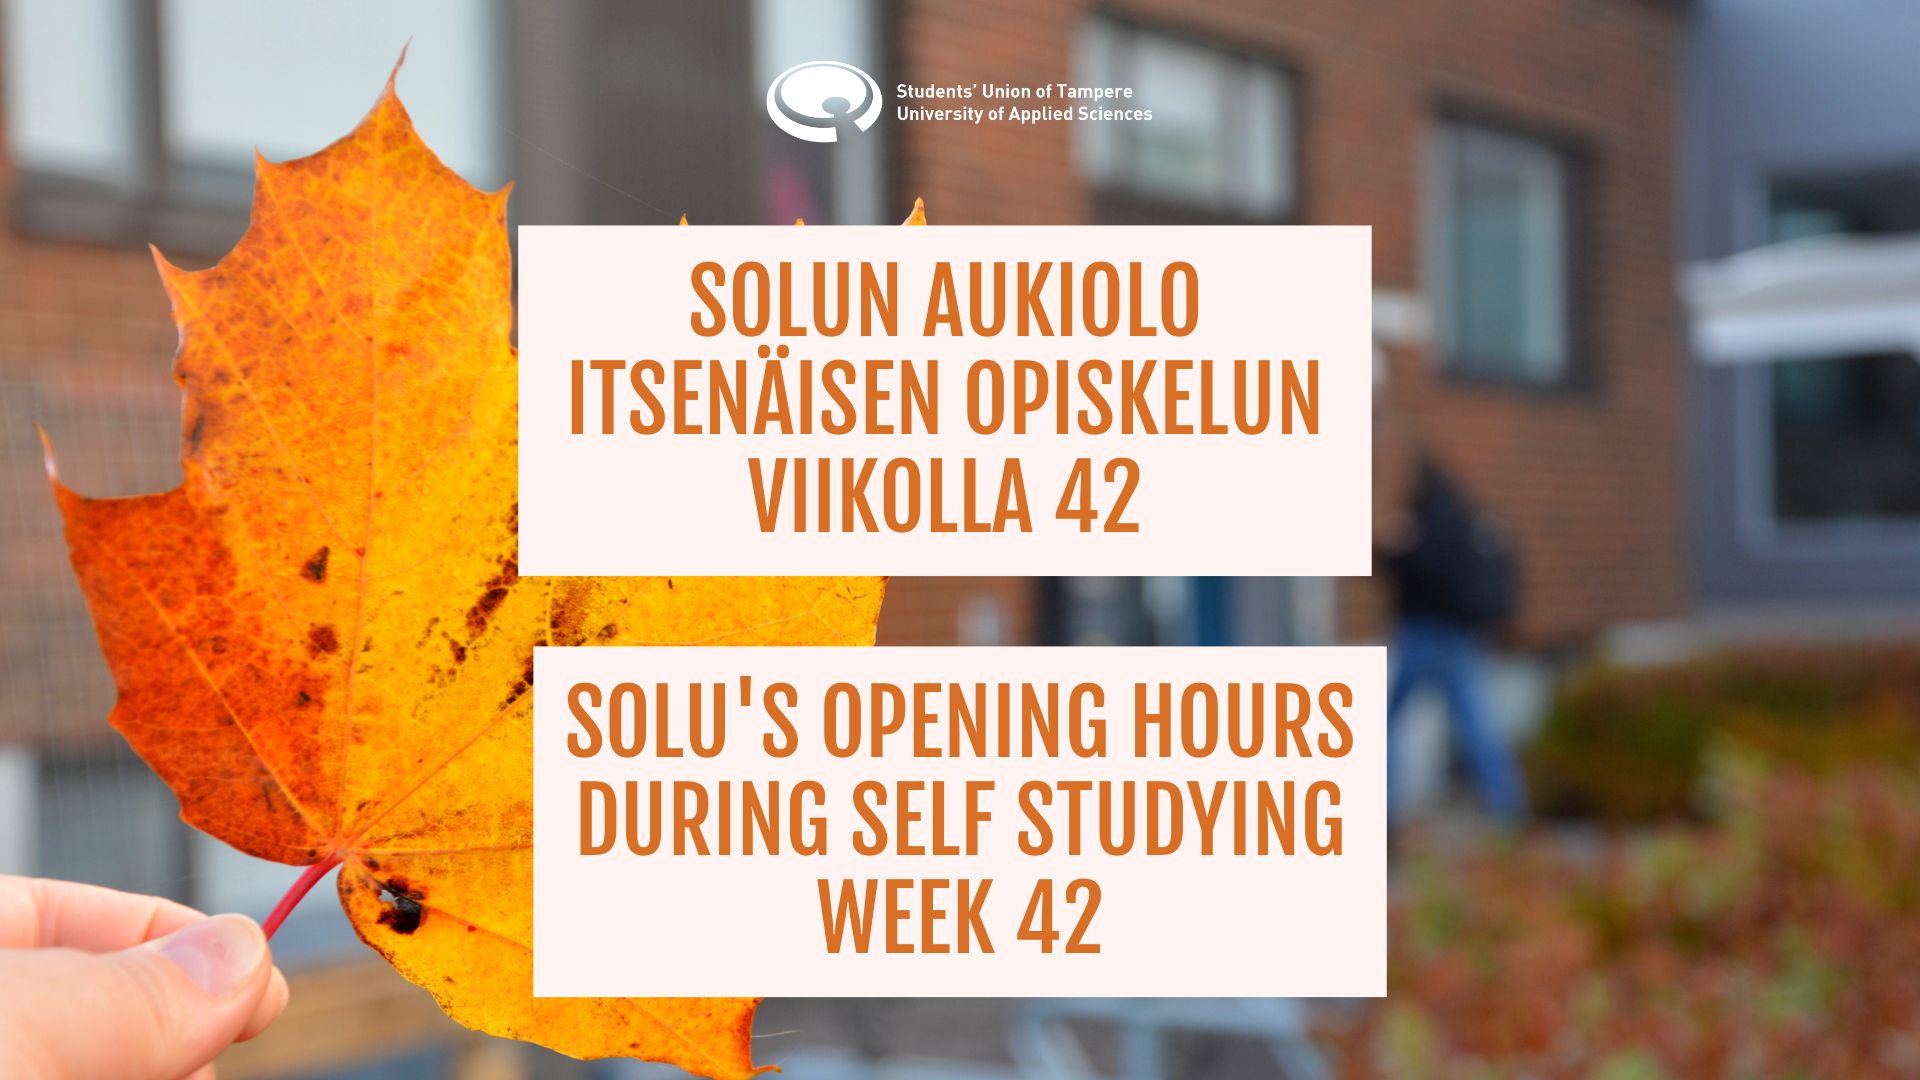 Solu’s opening hours in week 42